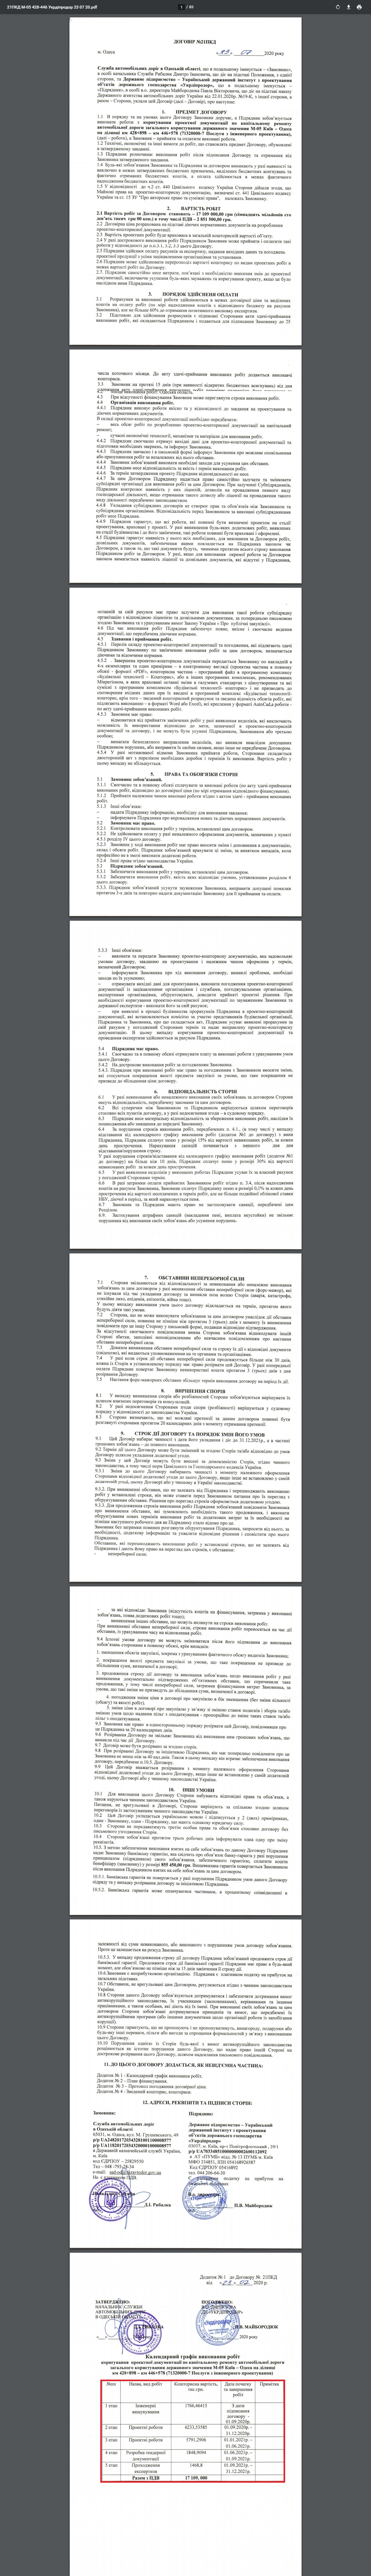 https://prozorro.gov.ua/tender/UA-2020-05-22-006052-c